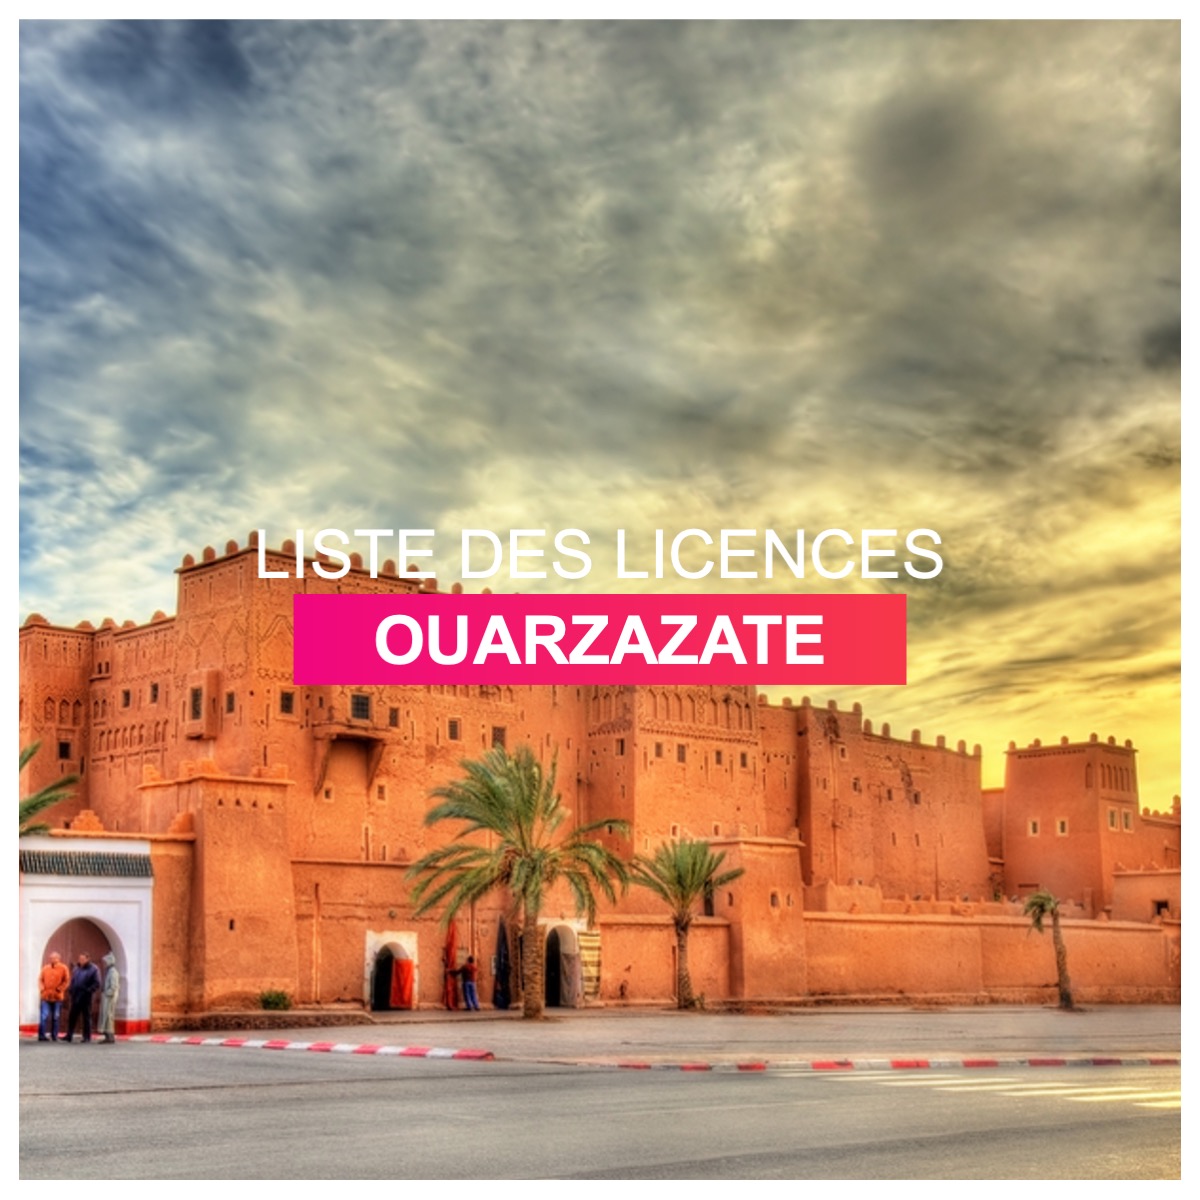 Liste des licences Ouarzazate l Dates-concours.ma